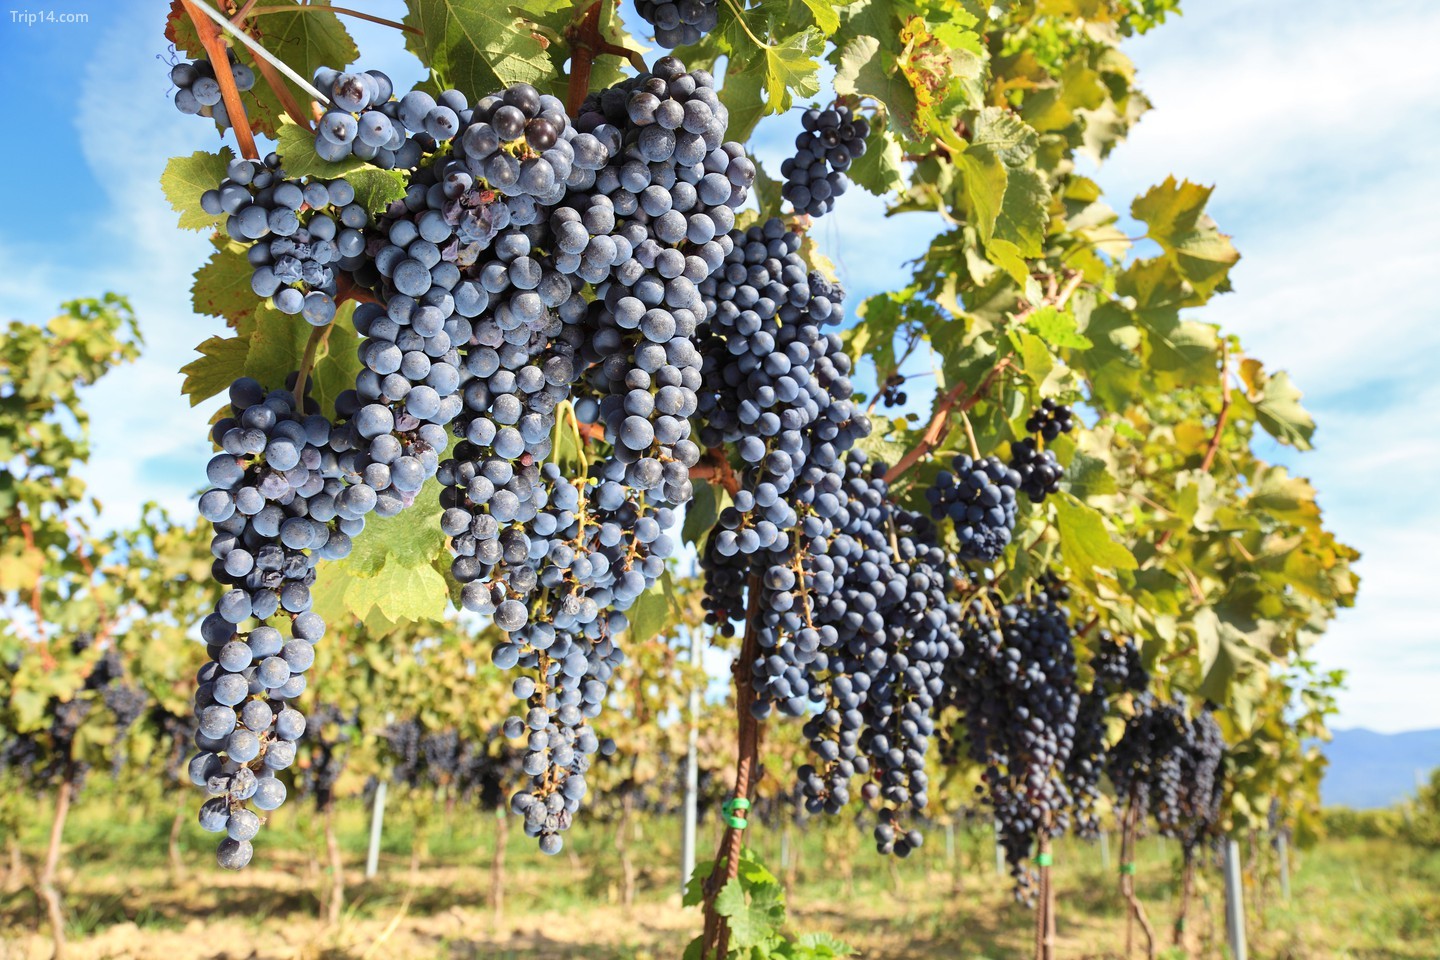 Tuscany là vùng sản xuất rượu vang lâu đời nhất của Ý